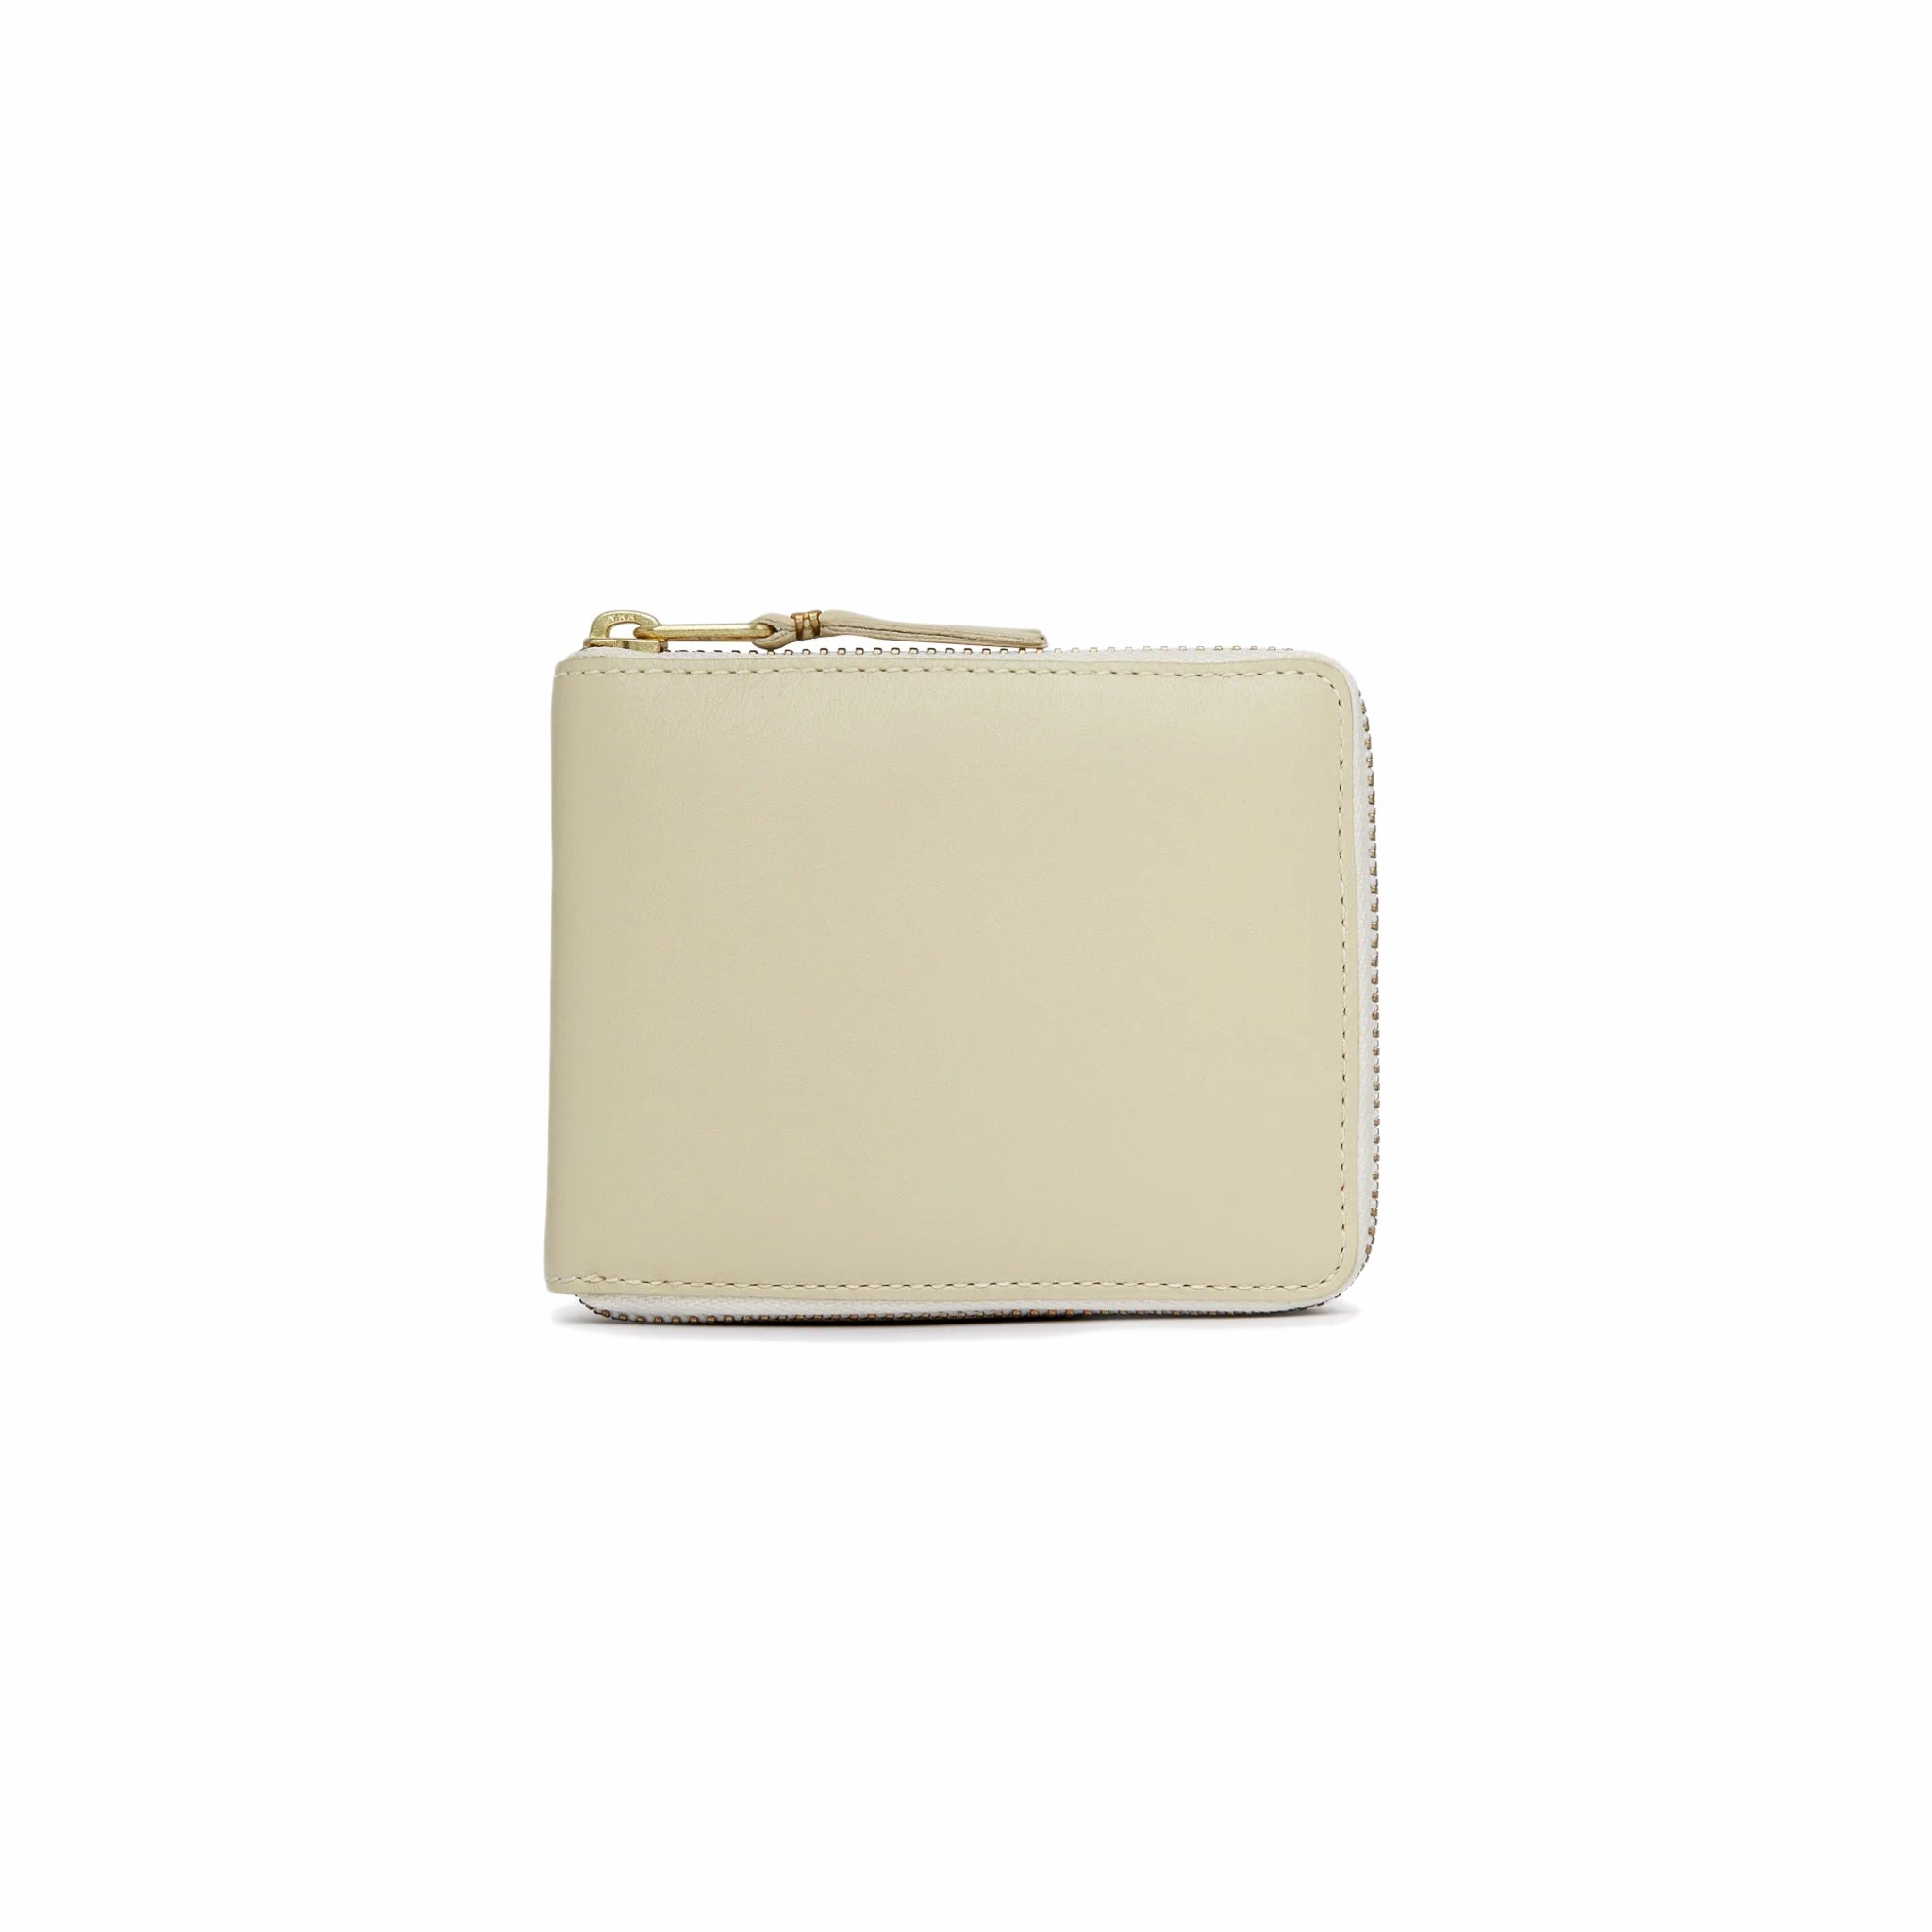 Comme des Garçons Classic Leather Wallet (Off White) SA7100 - August Shop